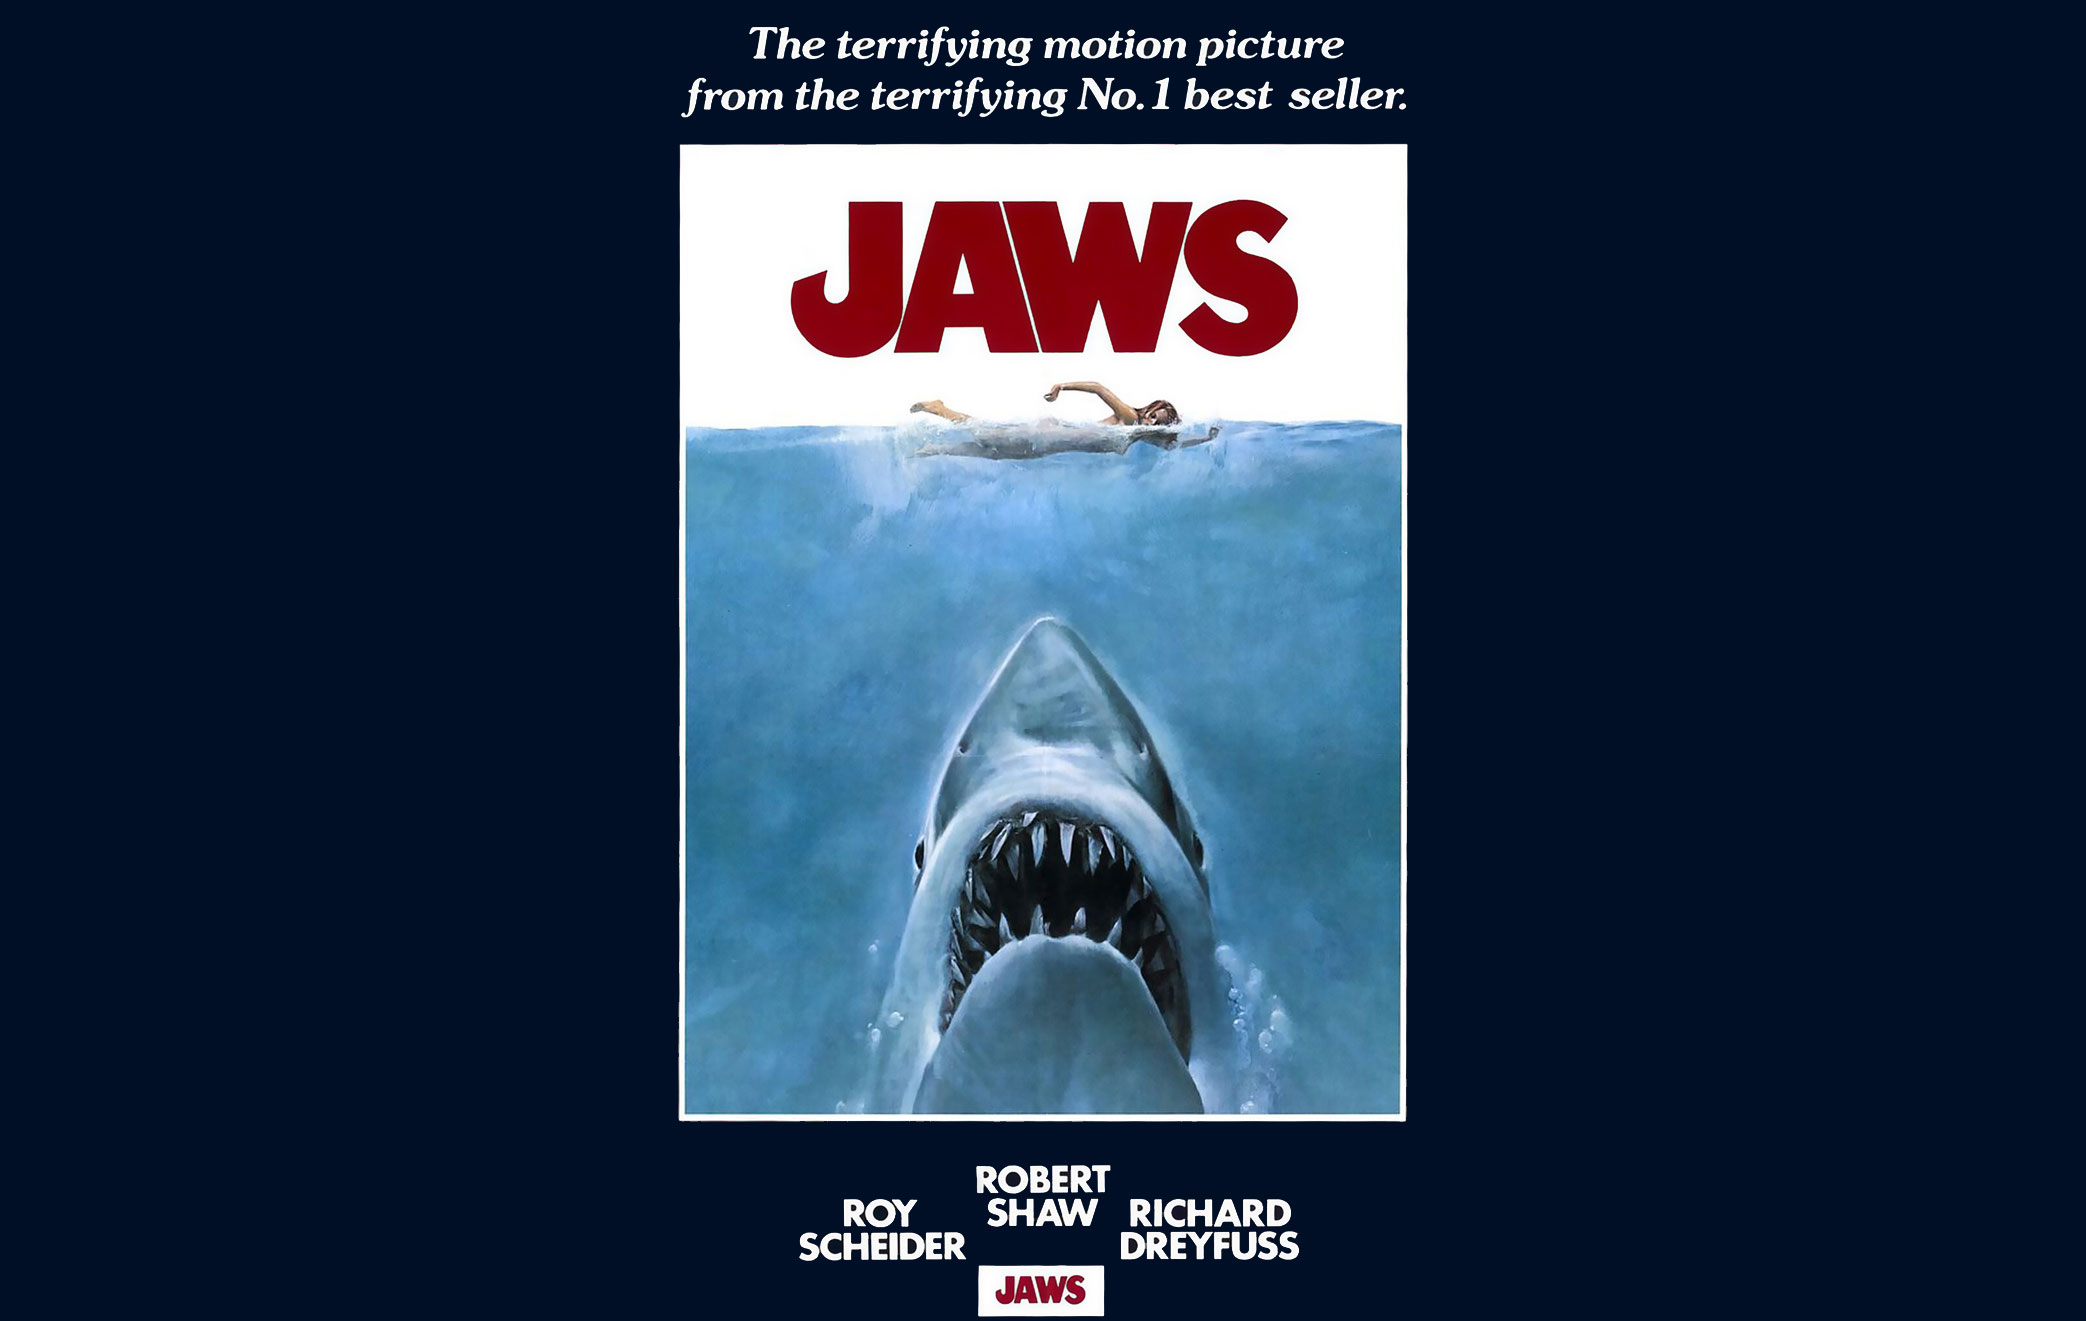 Jaws Unleashed traduz para os games o terror do filme de Steven Spielberg -  Cinema com Rapadura